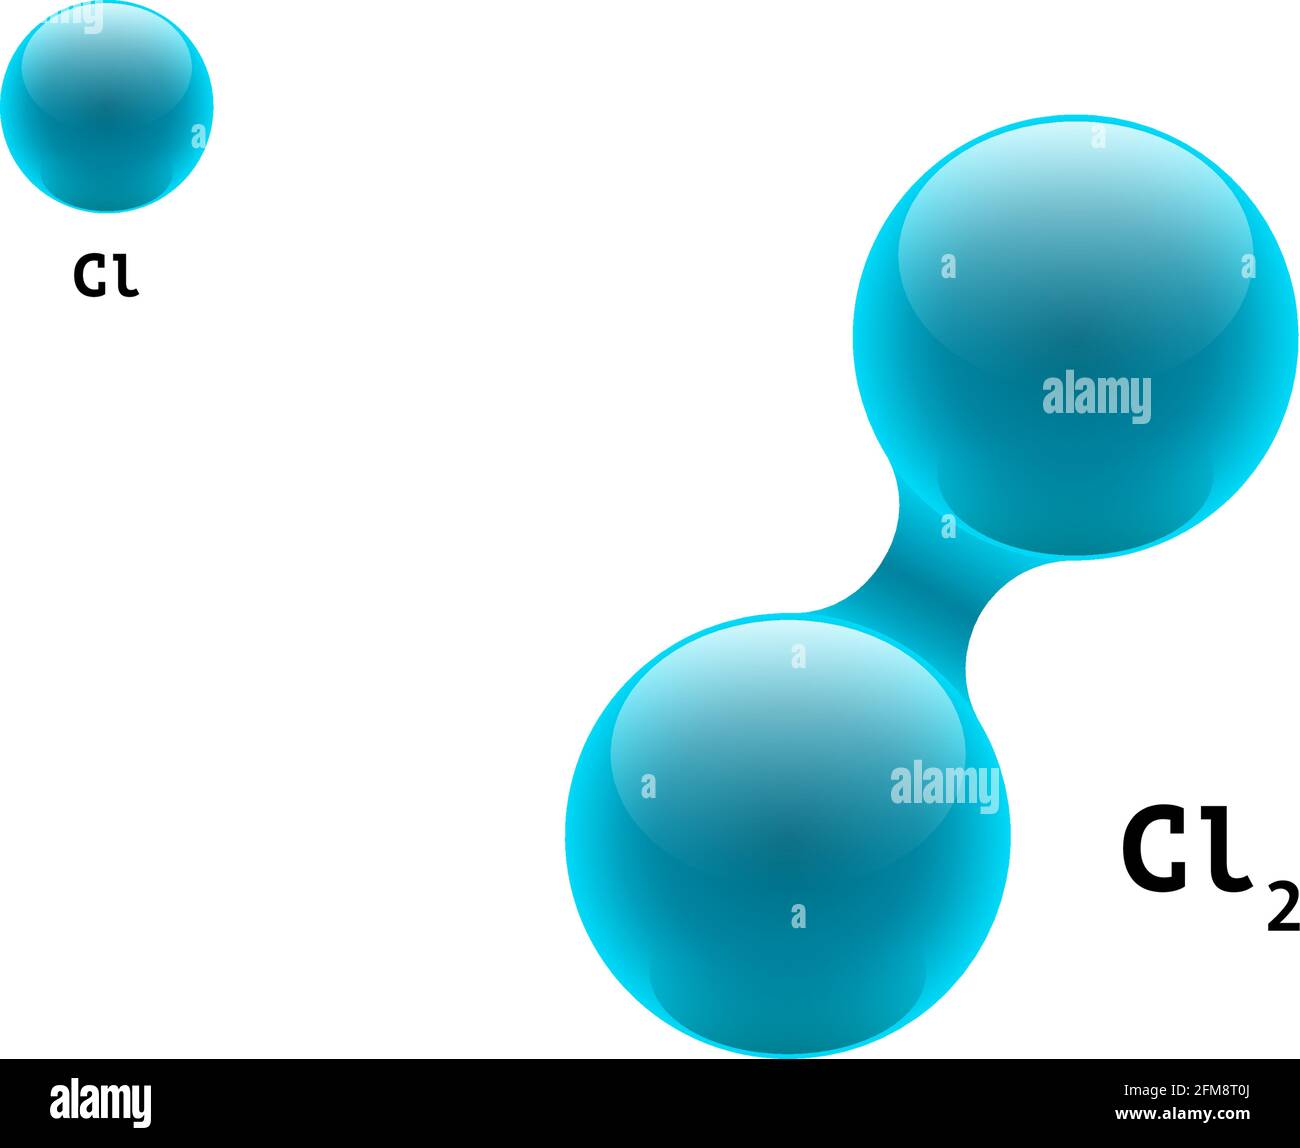 Modèle de chimie molécule diatomique chlore CL2 formule d'éléments scientifiques.Particules intégrées gaz inorganique 3D structure moléculaire composée.Deux sphères vectorielles de combinaison d'atomes de volume Illustration de Vecteur